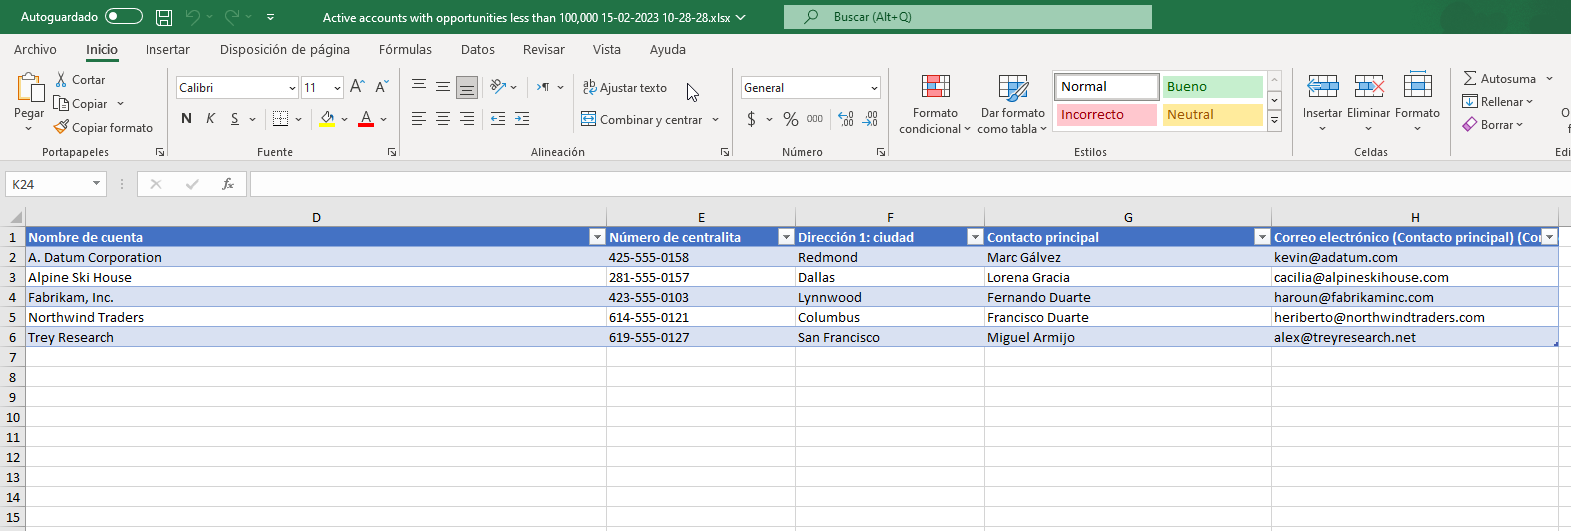 Datos de Dynamics 365 exportados a Excel desde Cuentas activas: oportunidades por encima de 100 000 $.